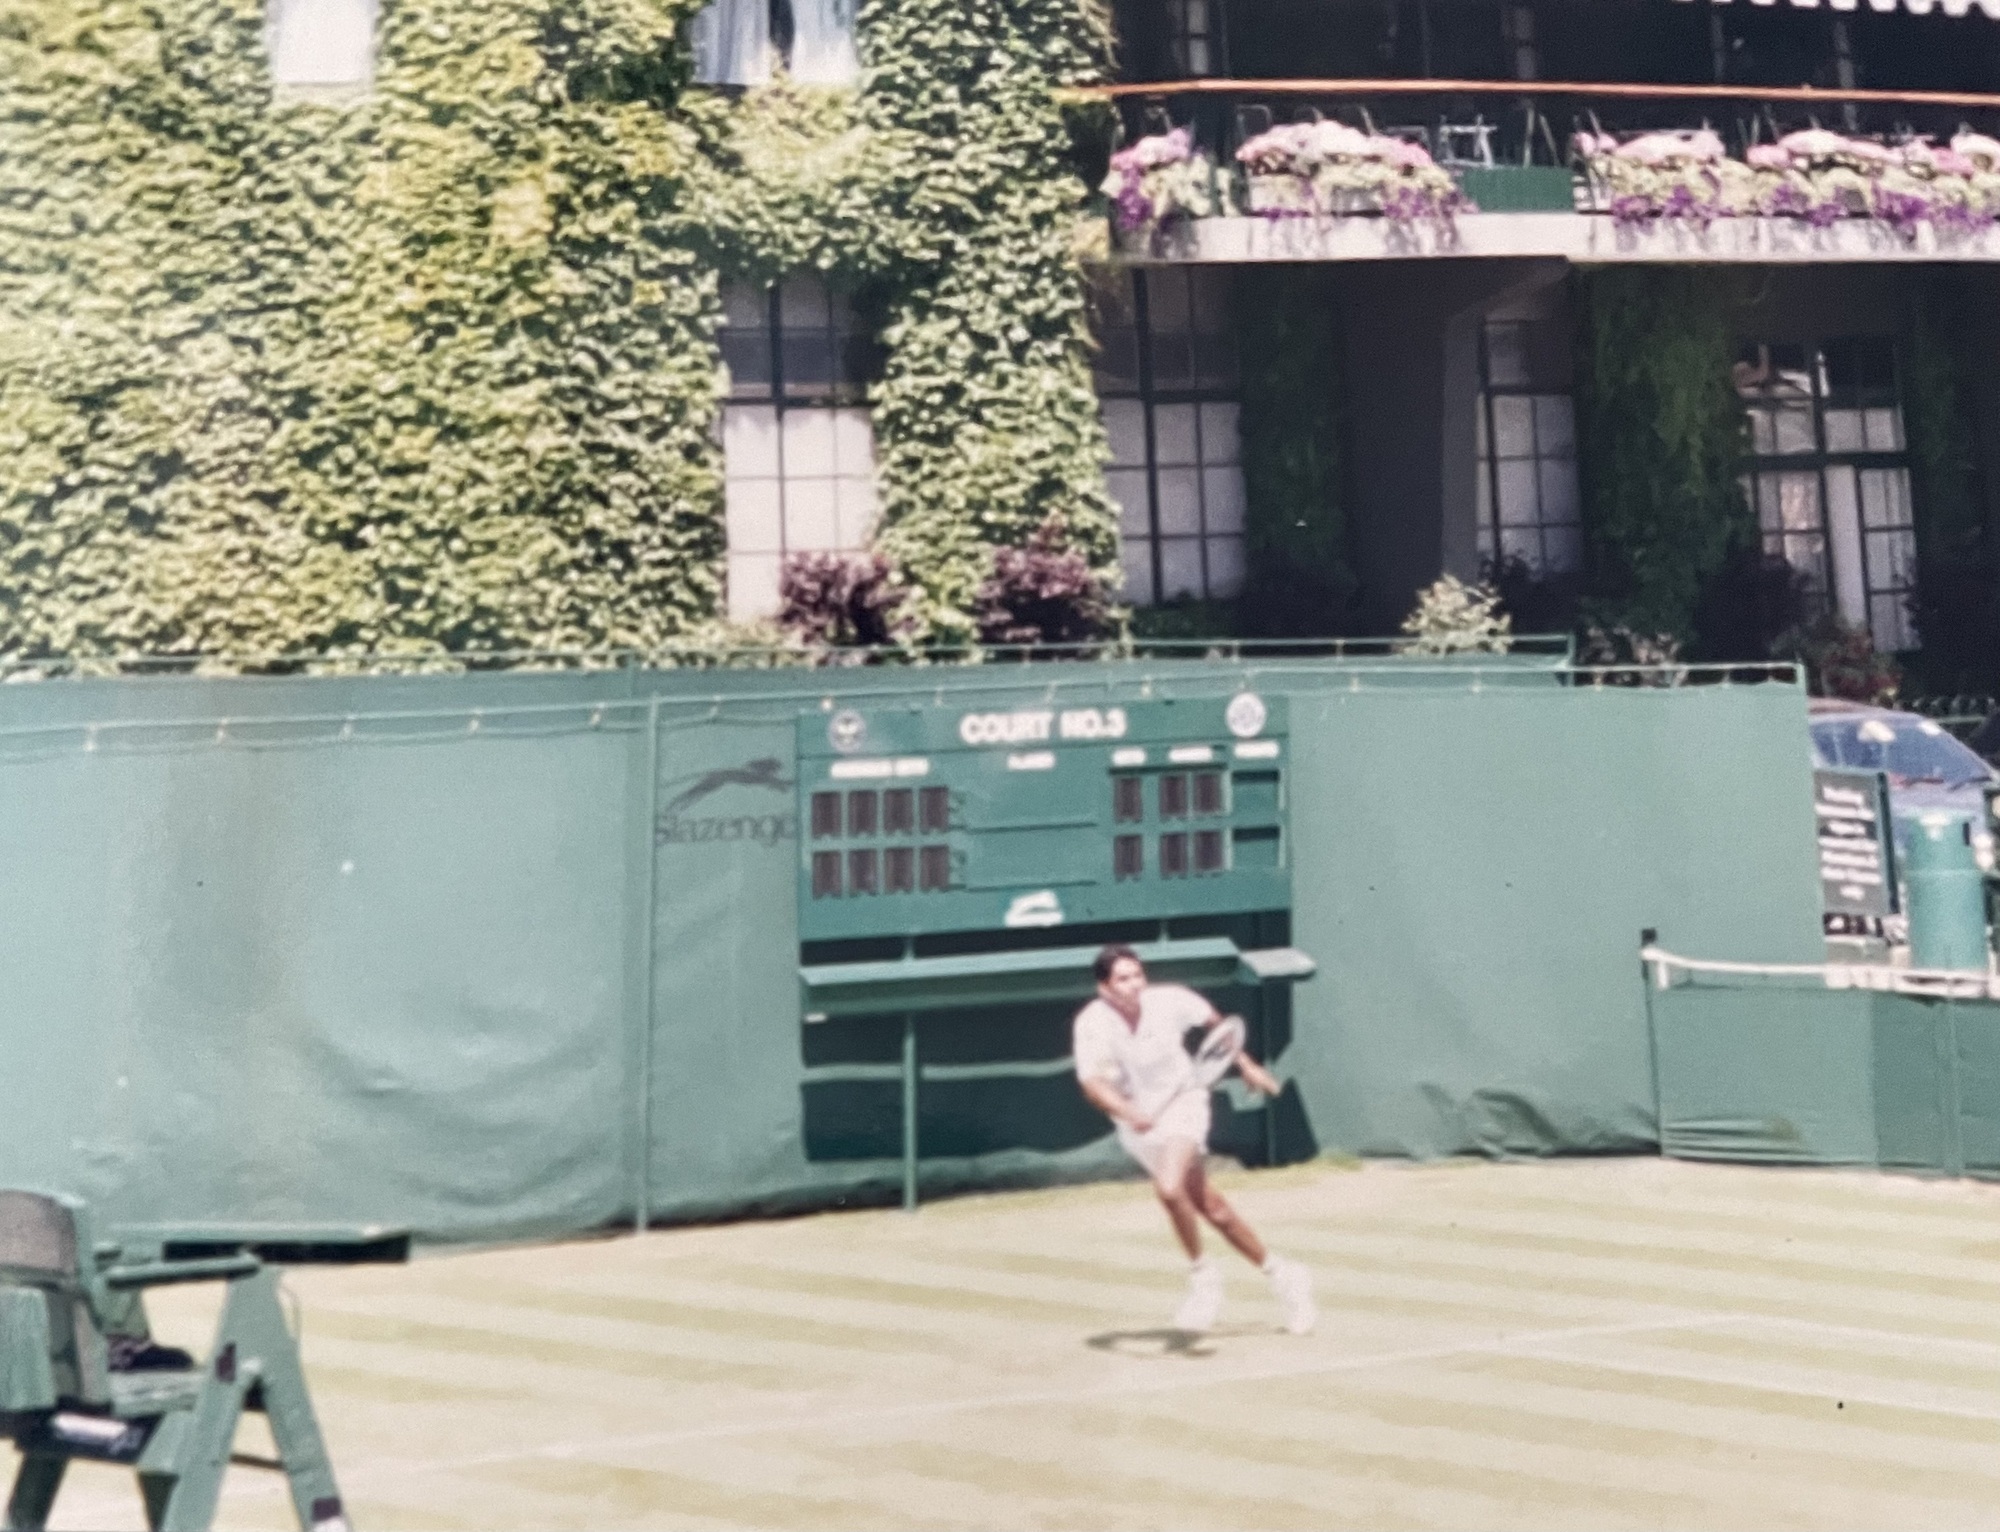 Geoff M. teaches tennis lessons in Sacramento, CA